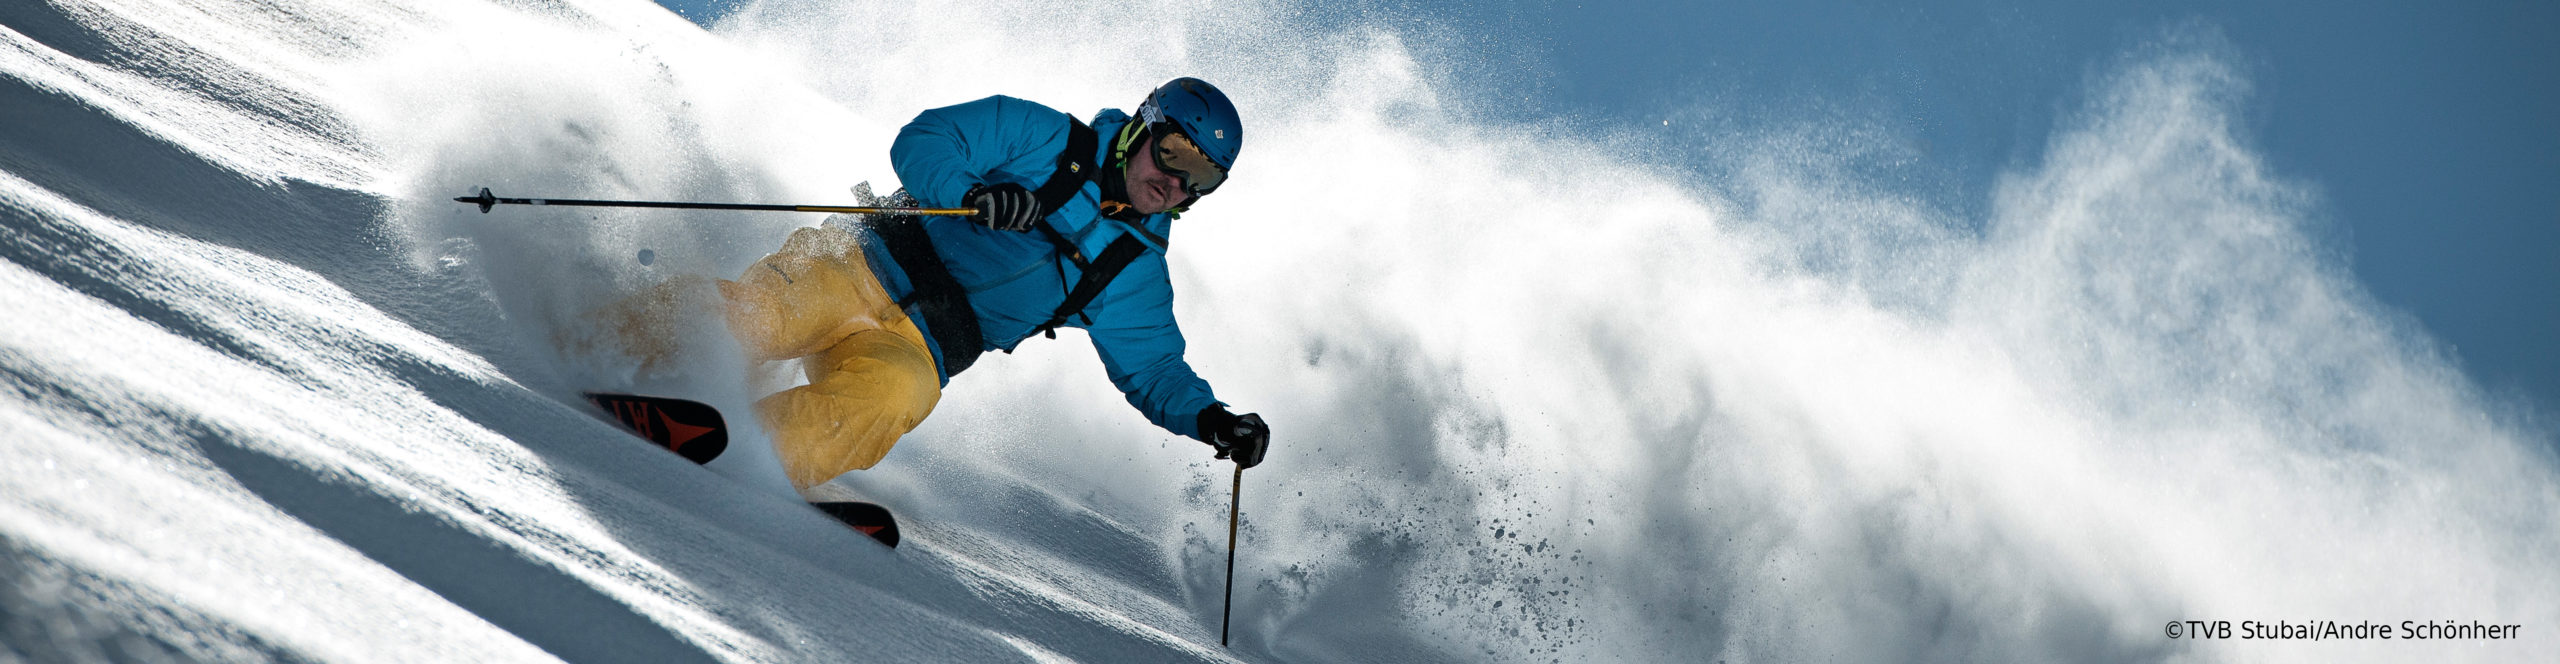 STUBAIER GLETSCHER – Skiwochenende – mit absoluter Schneegarantie – 3 Sterne Superior – ab Freitag nachmittag 